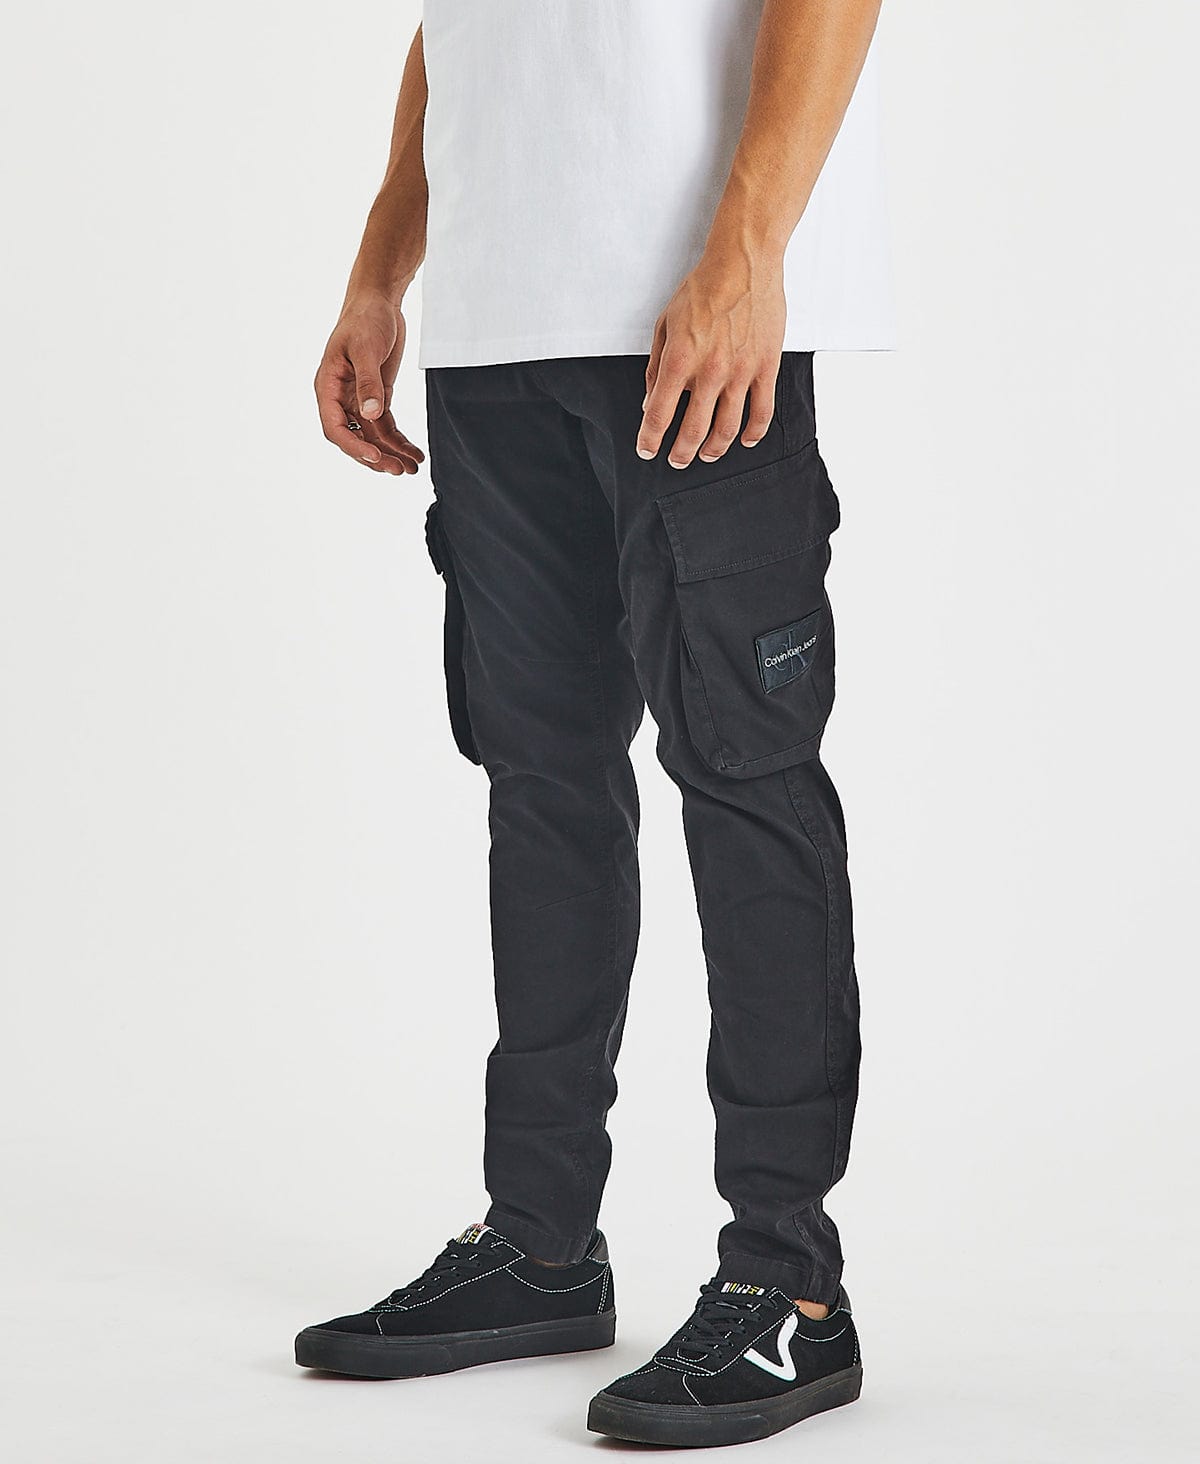 Calvin Klein Cargo Pants - 33” x 26” – Phart Clothes